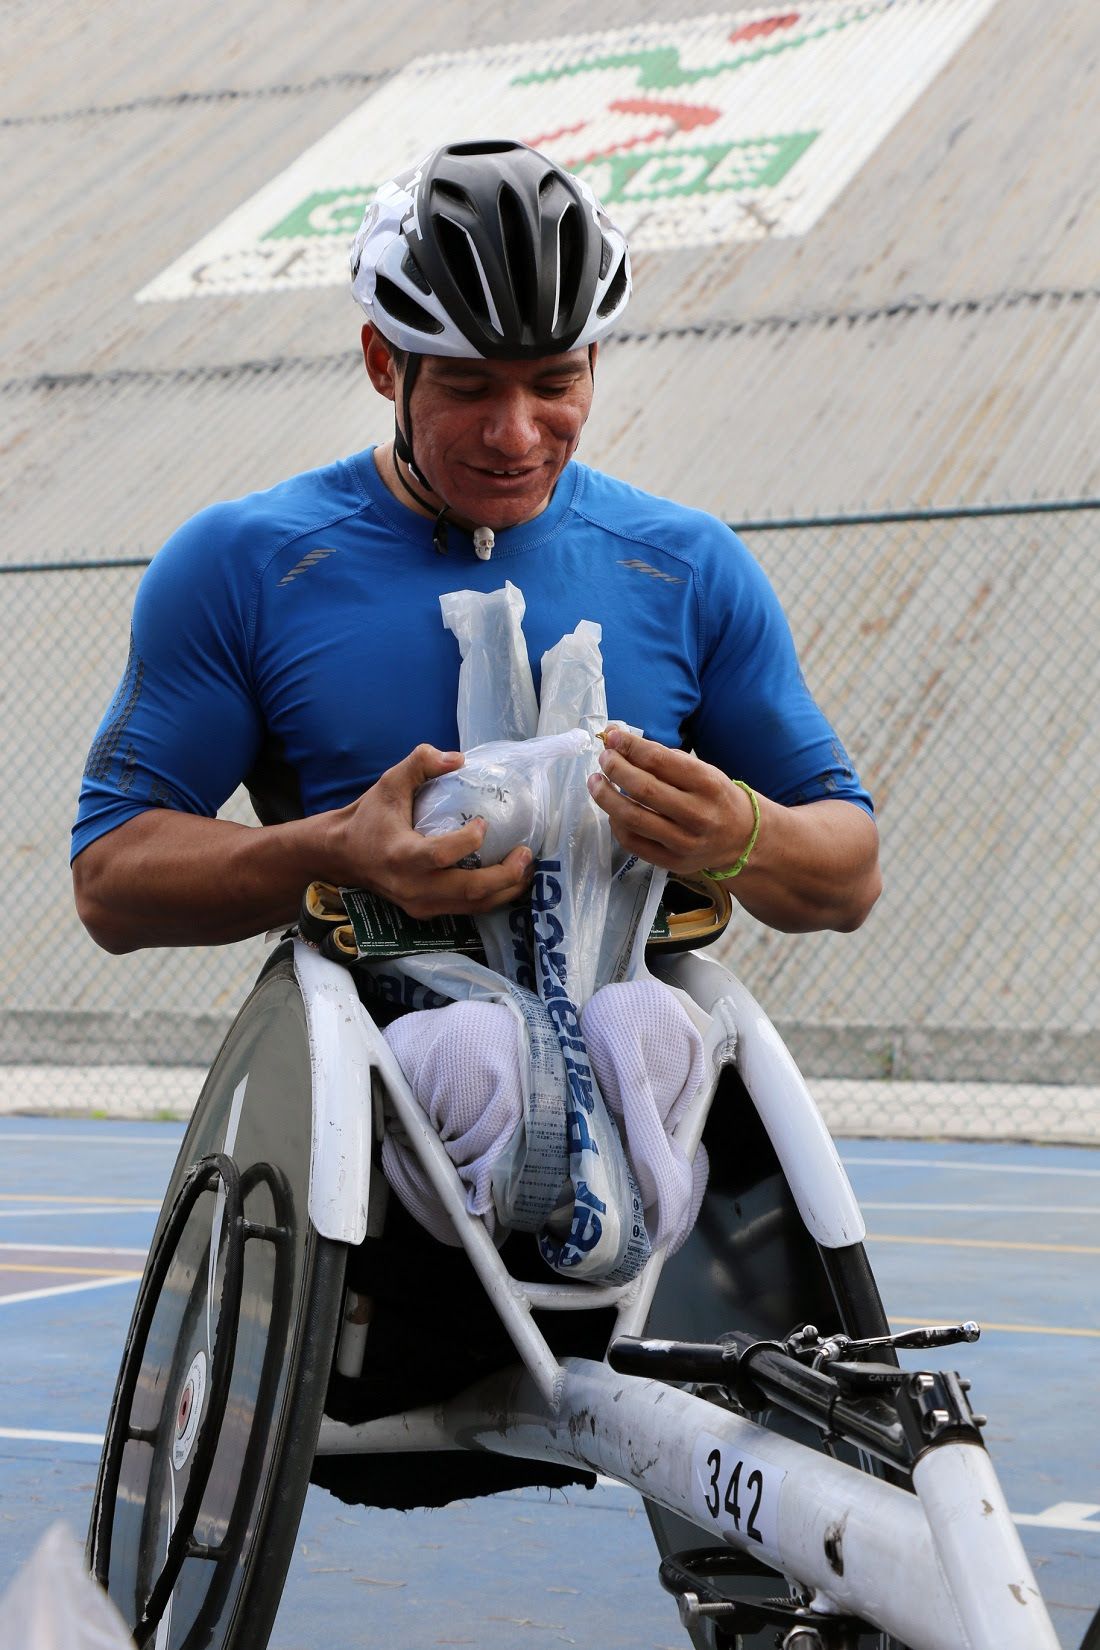 Apoyan con material a atletas sobre silla de ruedas